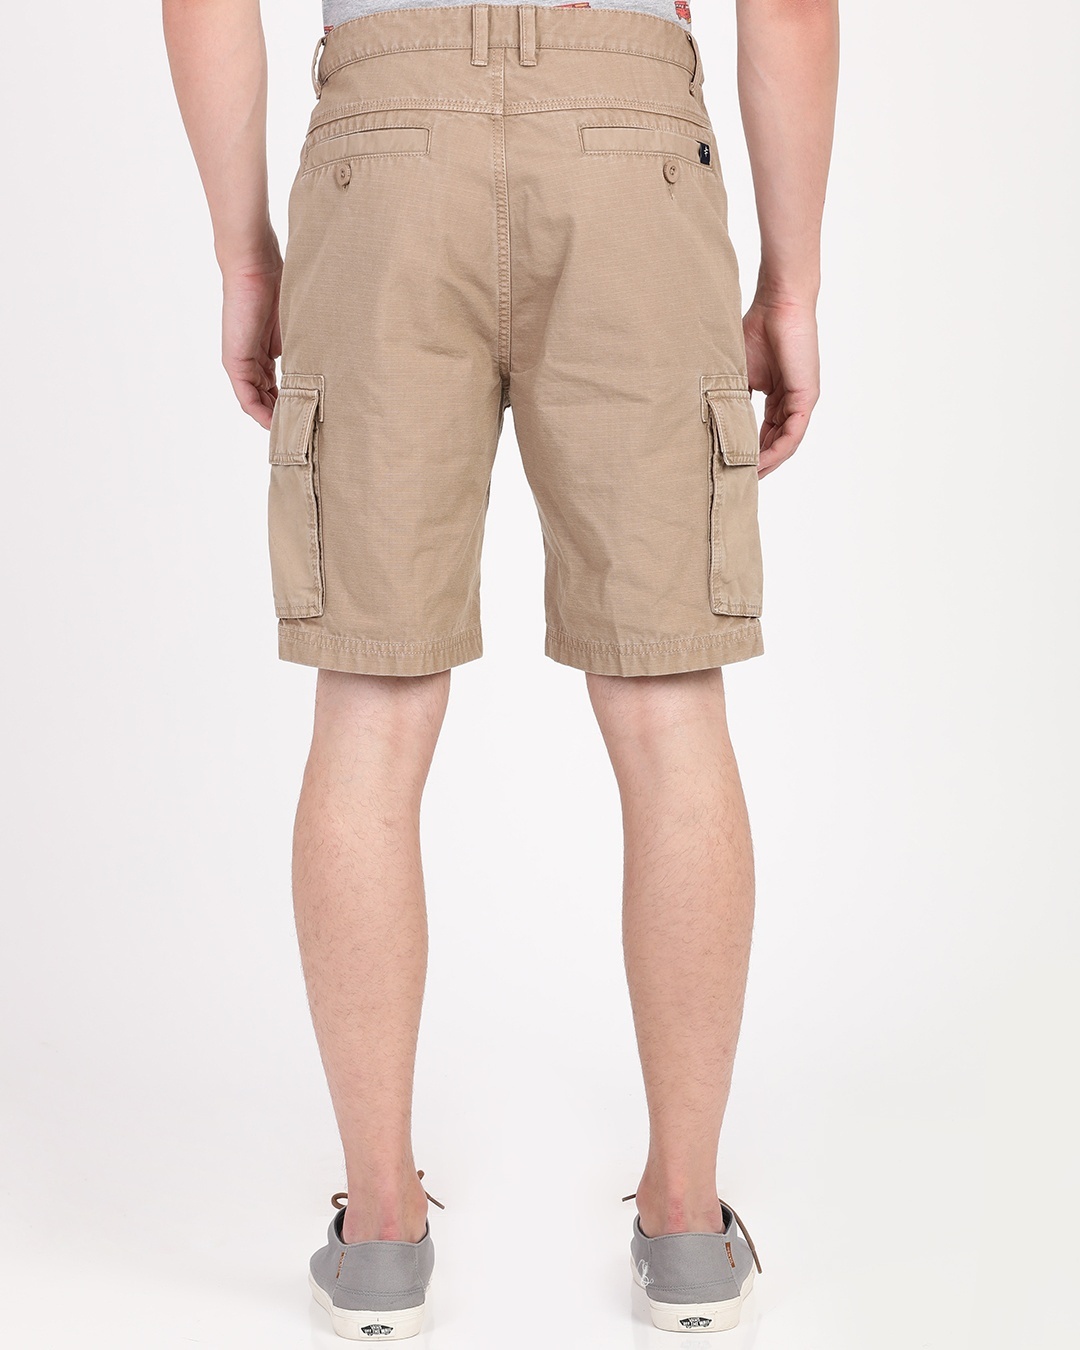 Buy Men's Beige Cotton Shorts for Men Beige Online at Bewakoof